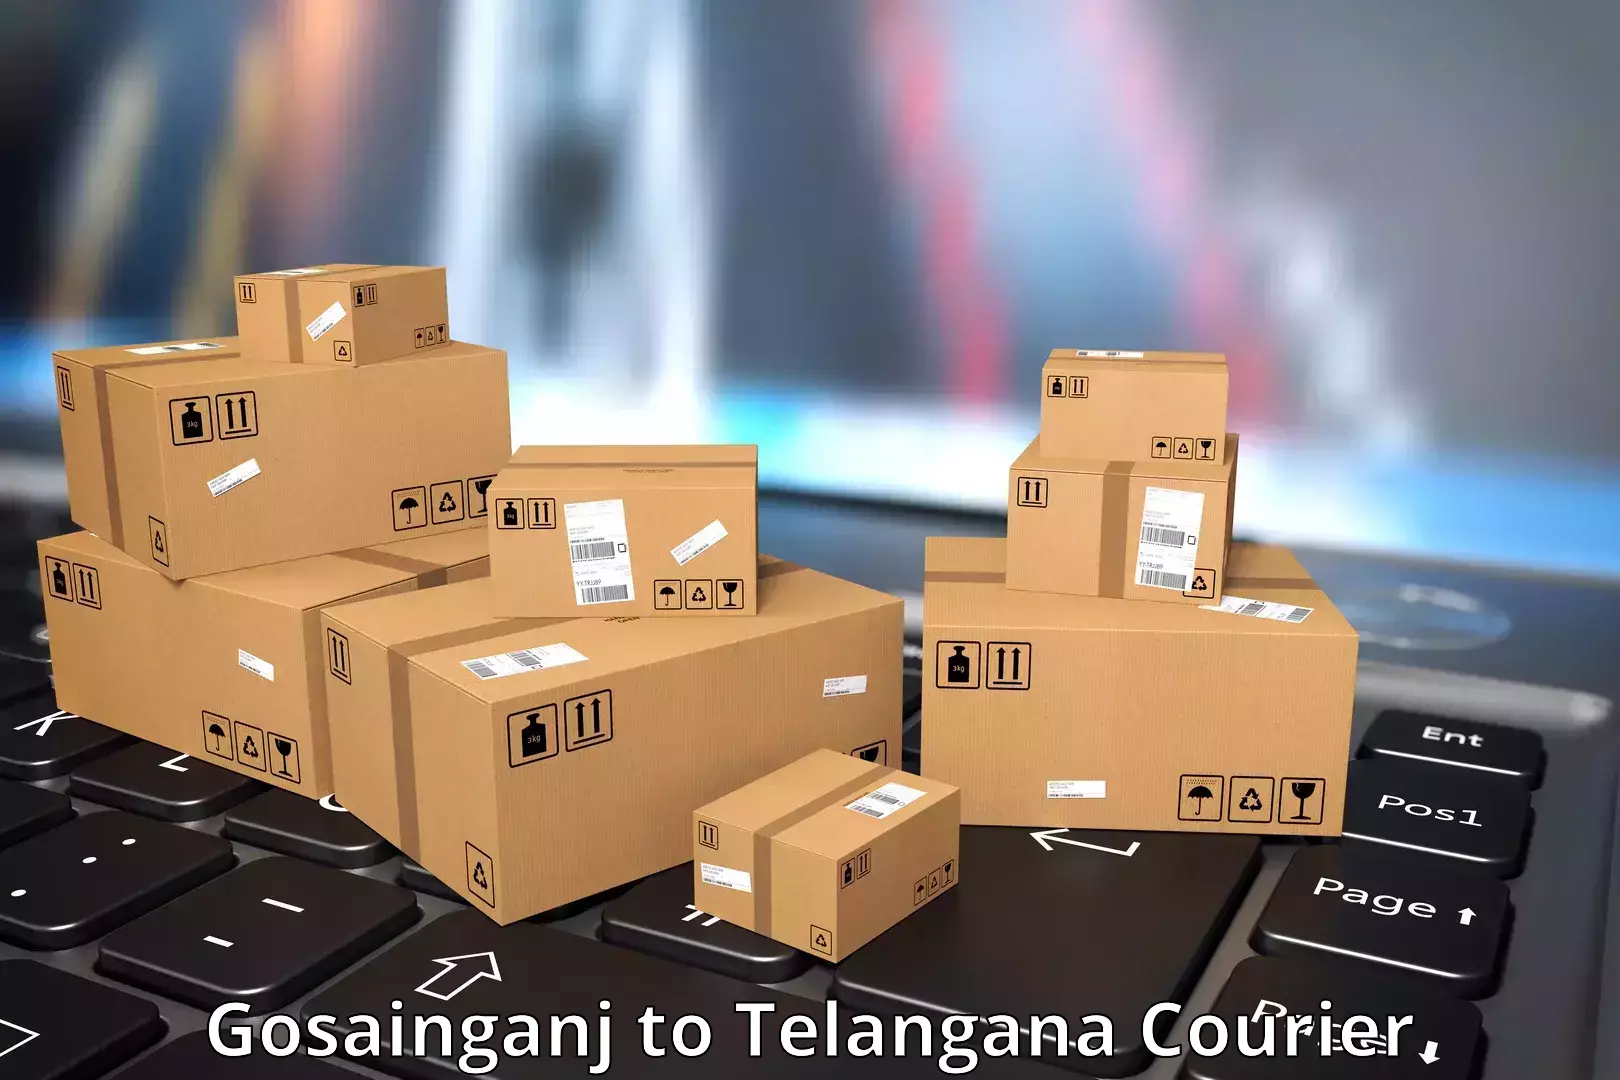 Automated shipping processes Gosainganj to Yellareddy